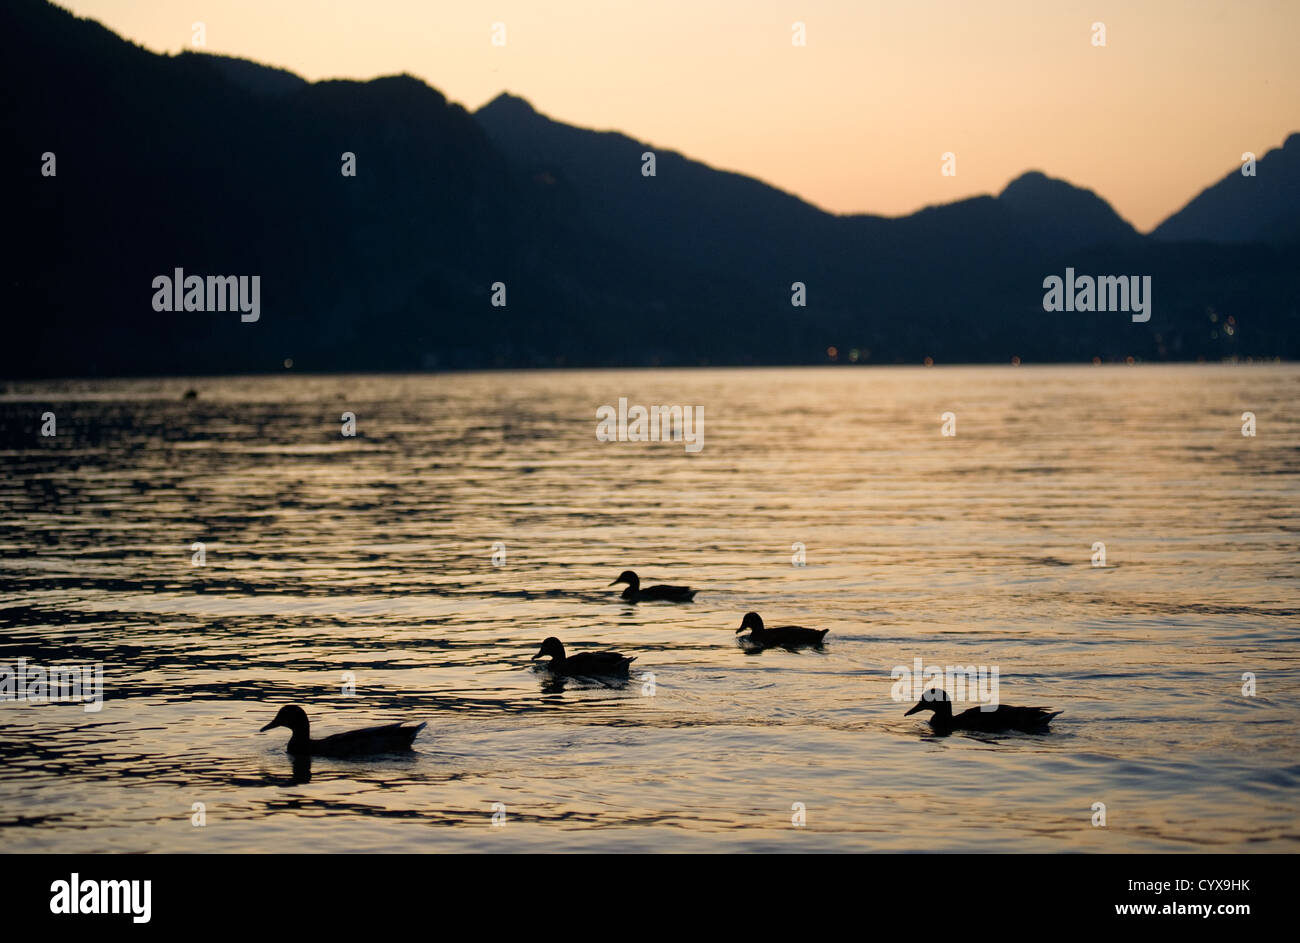 Cinque anatre nuotare in un lago durante il tramonto in Austria Foto Stock